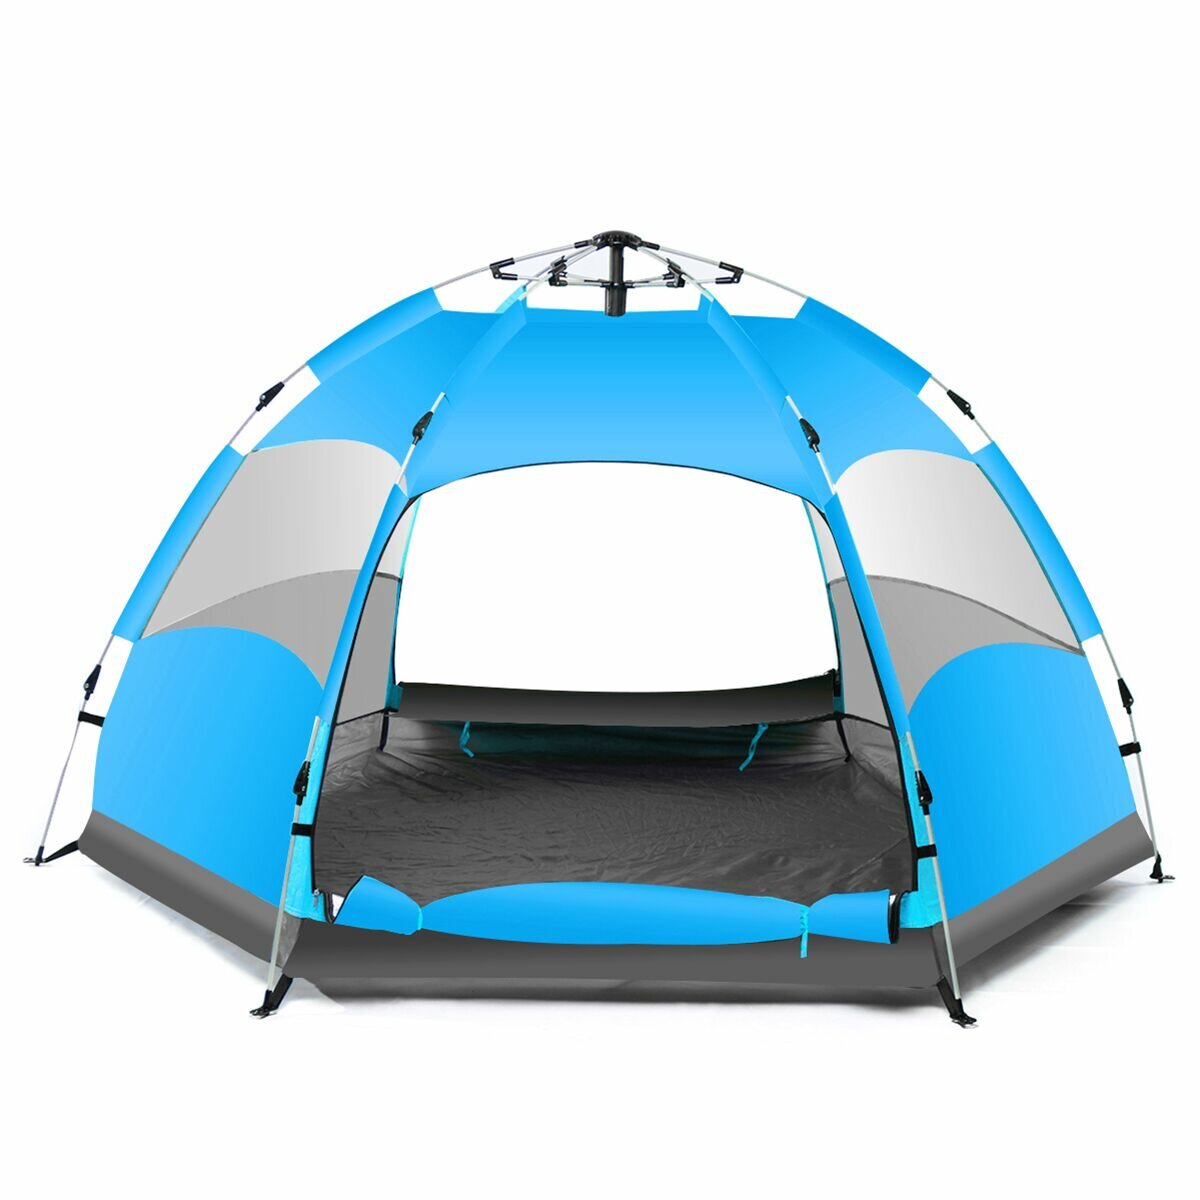 PRee® Tenda da campeggio automatica impermeabile per 5-7 persone, grande, per campeggio e trekking, base camp all'aperto, blu/arancione